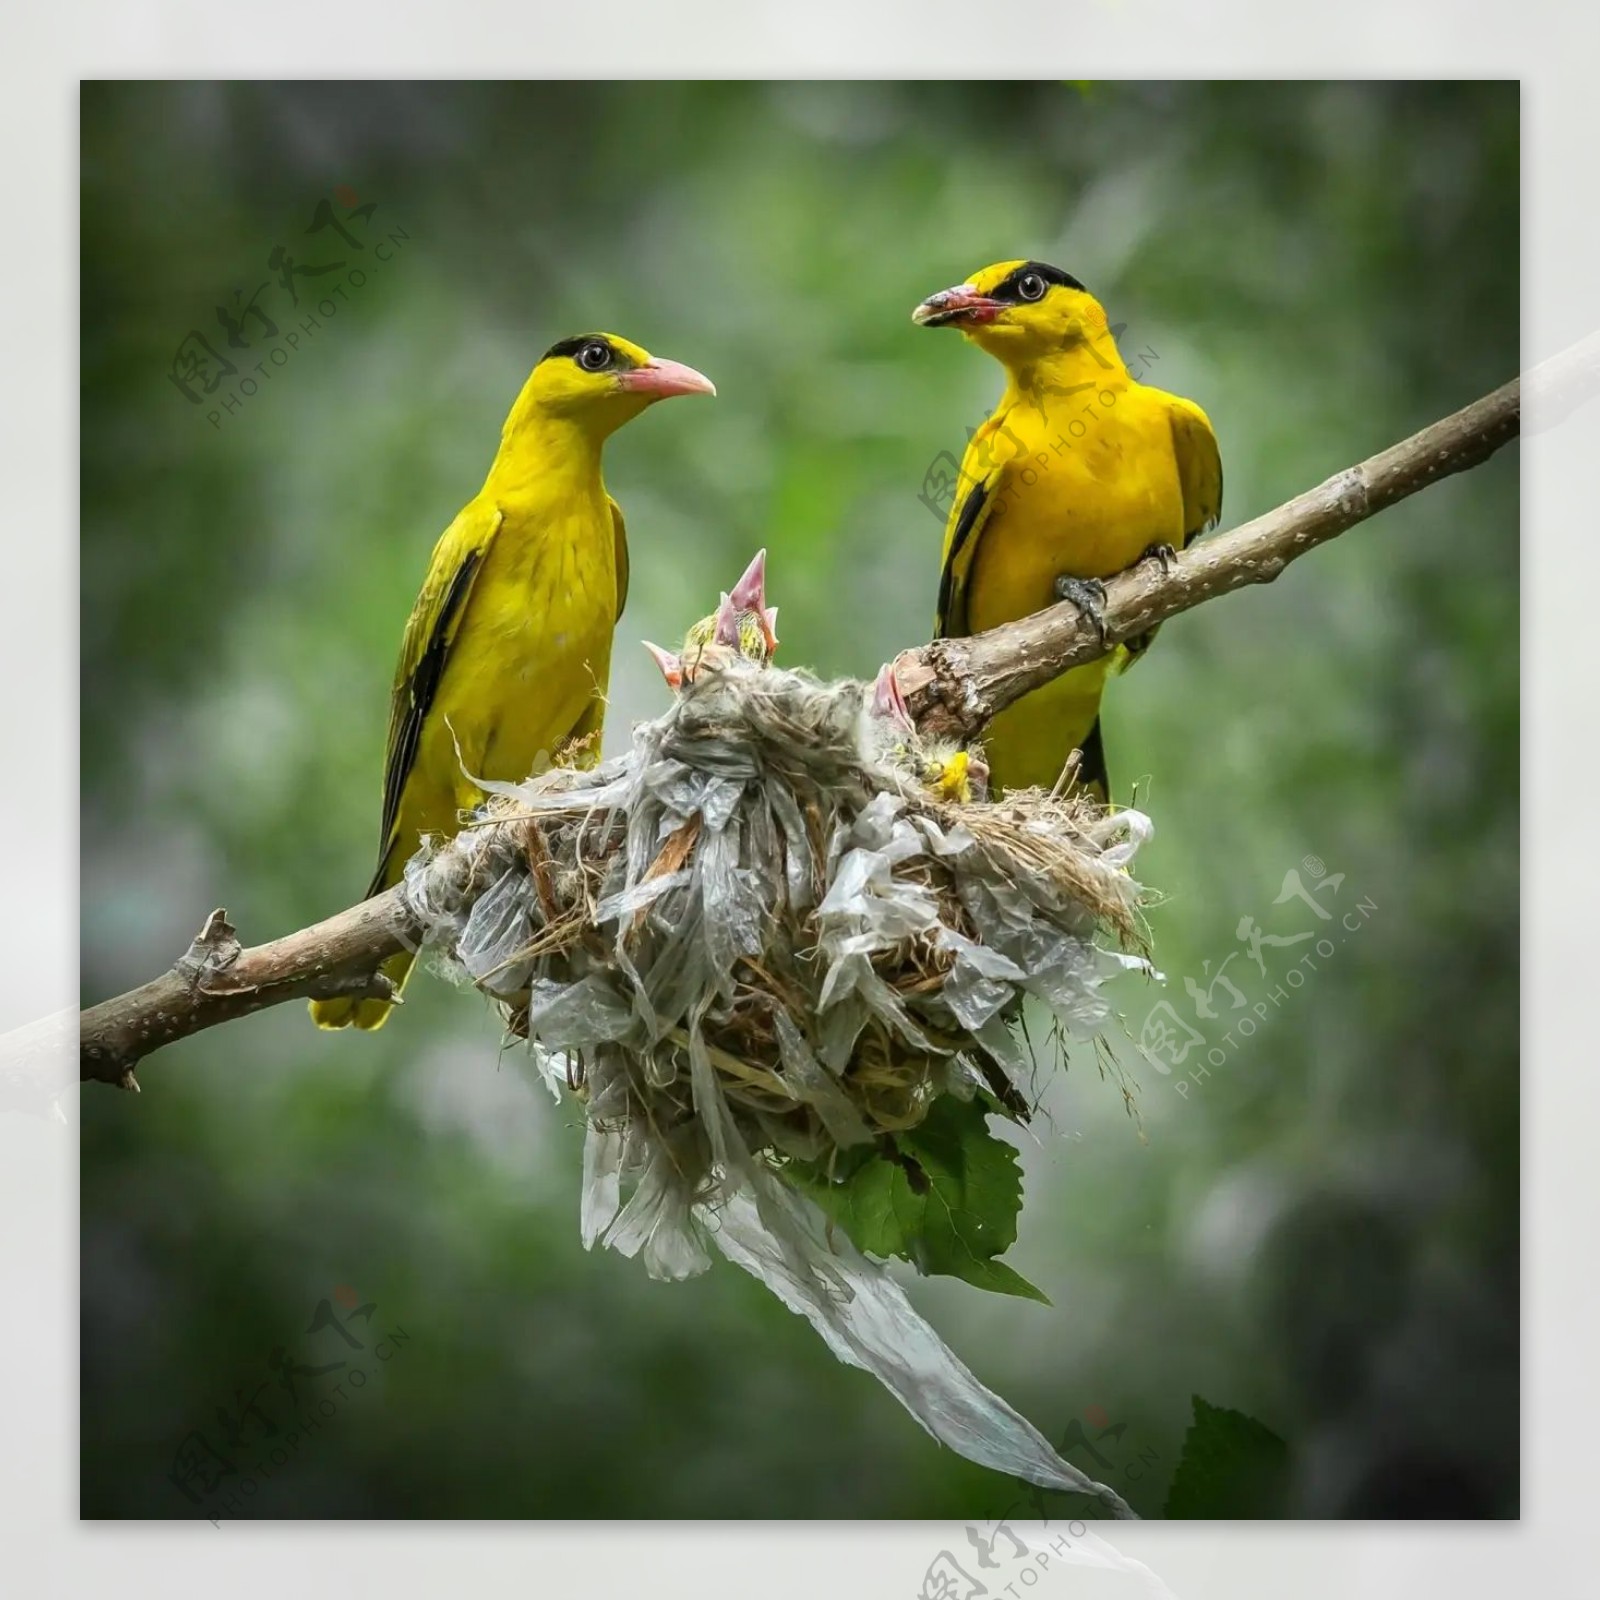 【高清图】树上一只黄鹂鸟-中关村在线摄影论坛